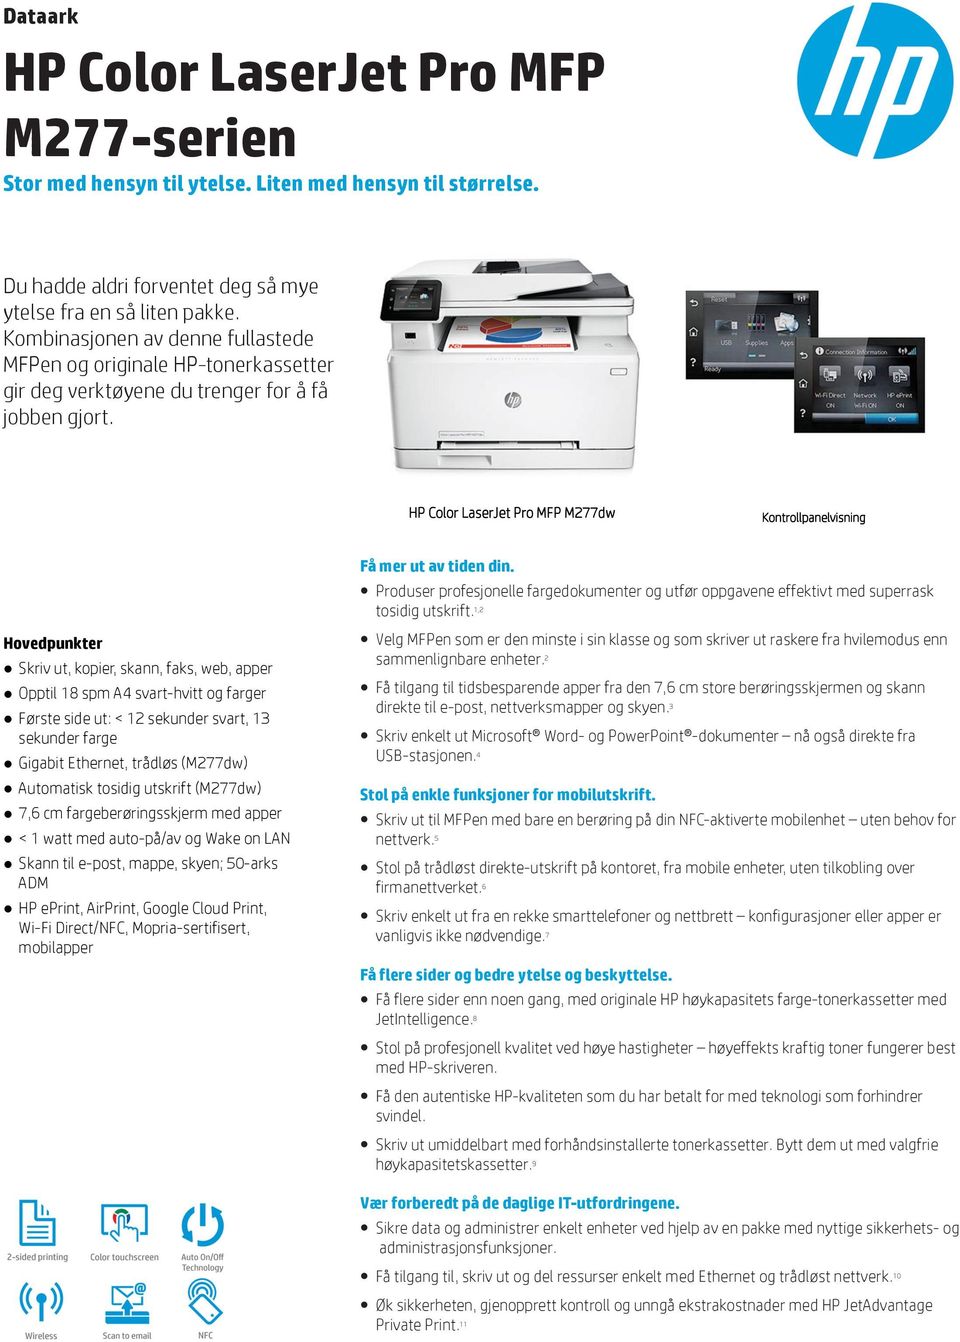 HP Color LaserJet Pro MFP M277dw Kontrollpanelvisning Hovedpunkter Skriv ut, kopier, skann, faks, web, apper Opptil 18 spm A4 svart-hvitt og farger Første side ut: < 12 sekunder svart, 13 sekunder